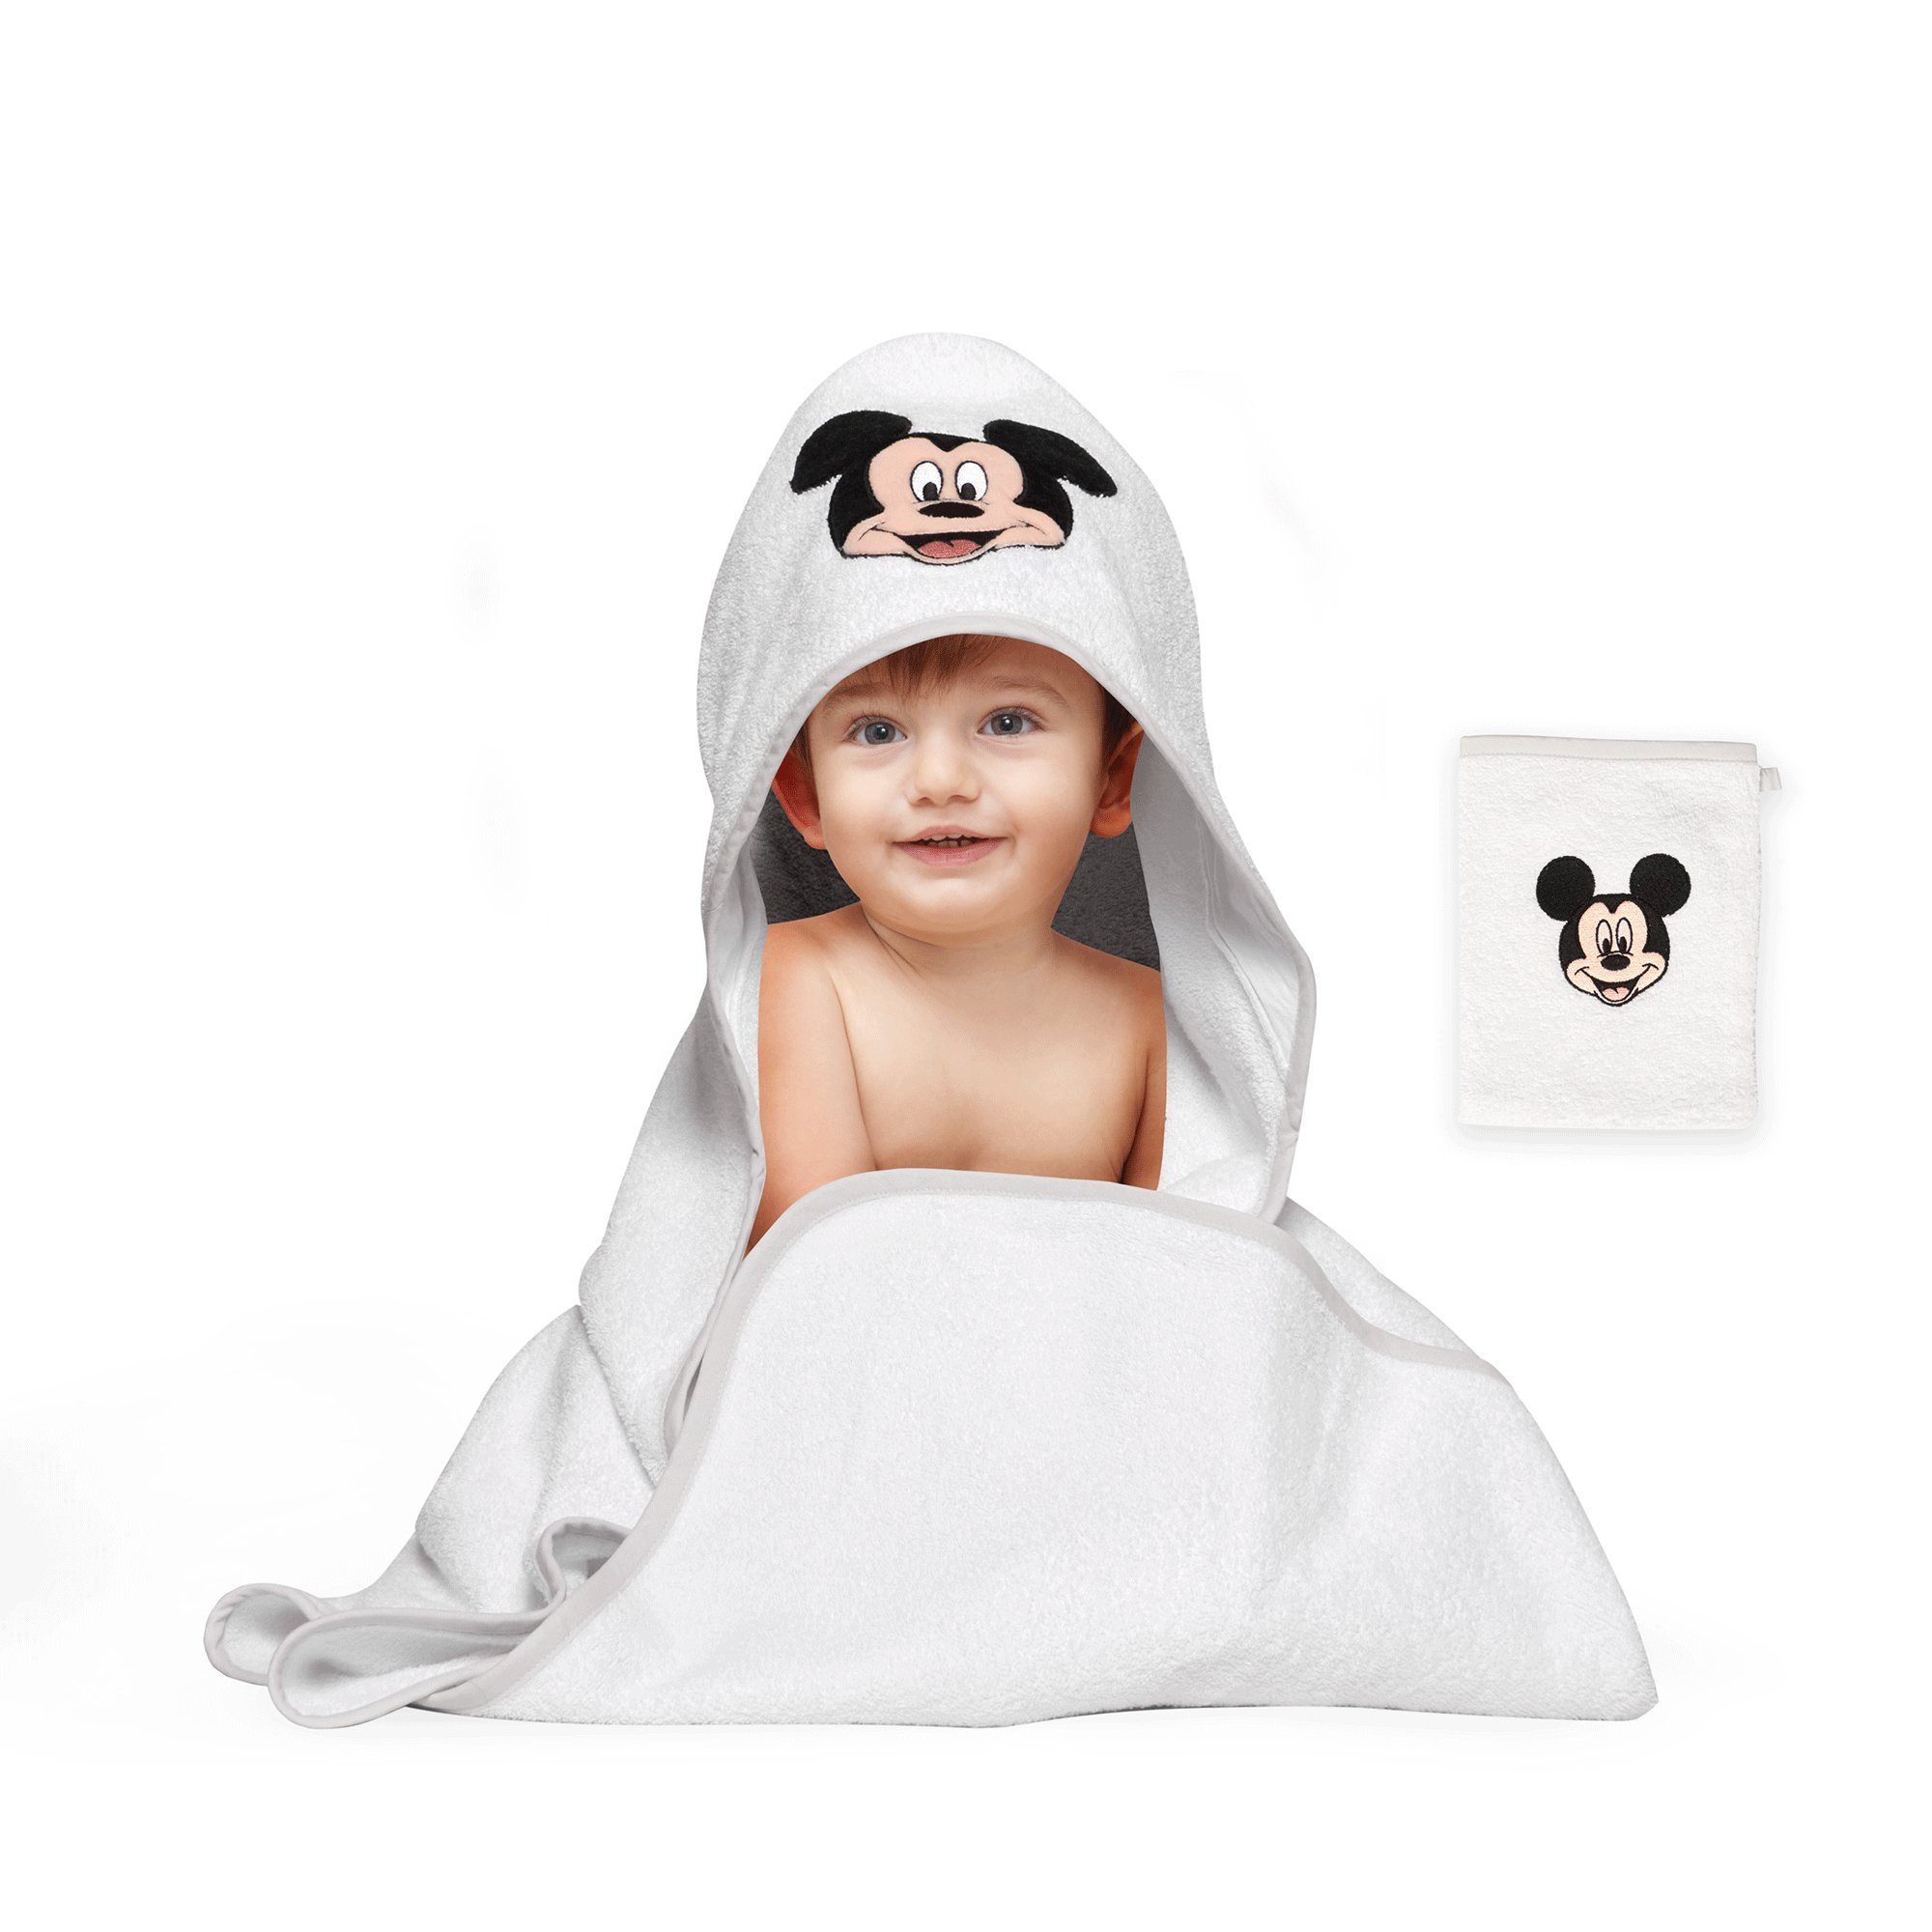 Disney Kapuzenhandtuch Disney Baby Kapuzenhandtuch Set, 2-teiling, 100% Baumwolle, Kapuzenhandtuch mit Waschlappen Mickey